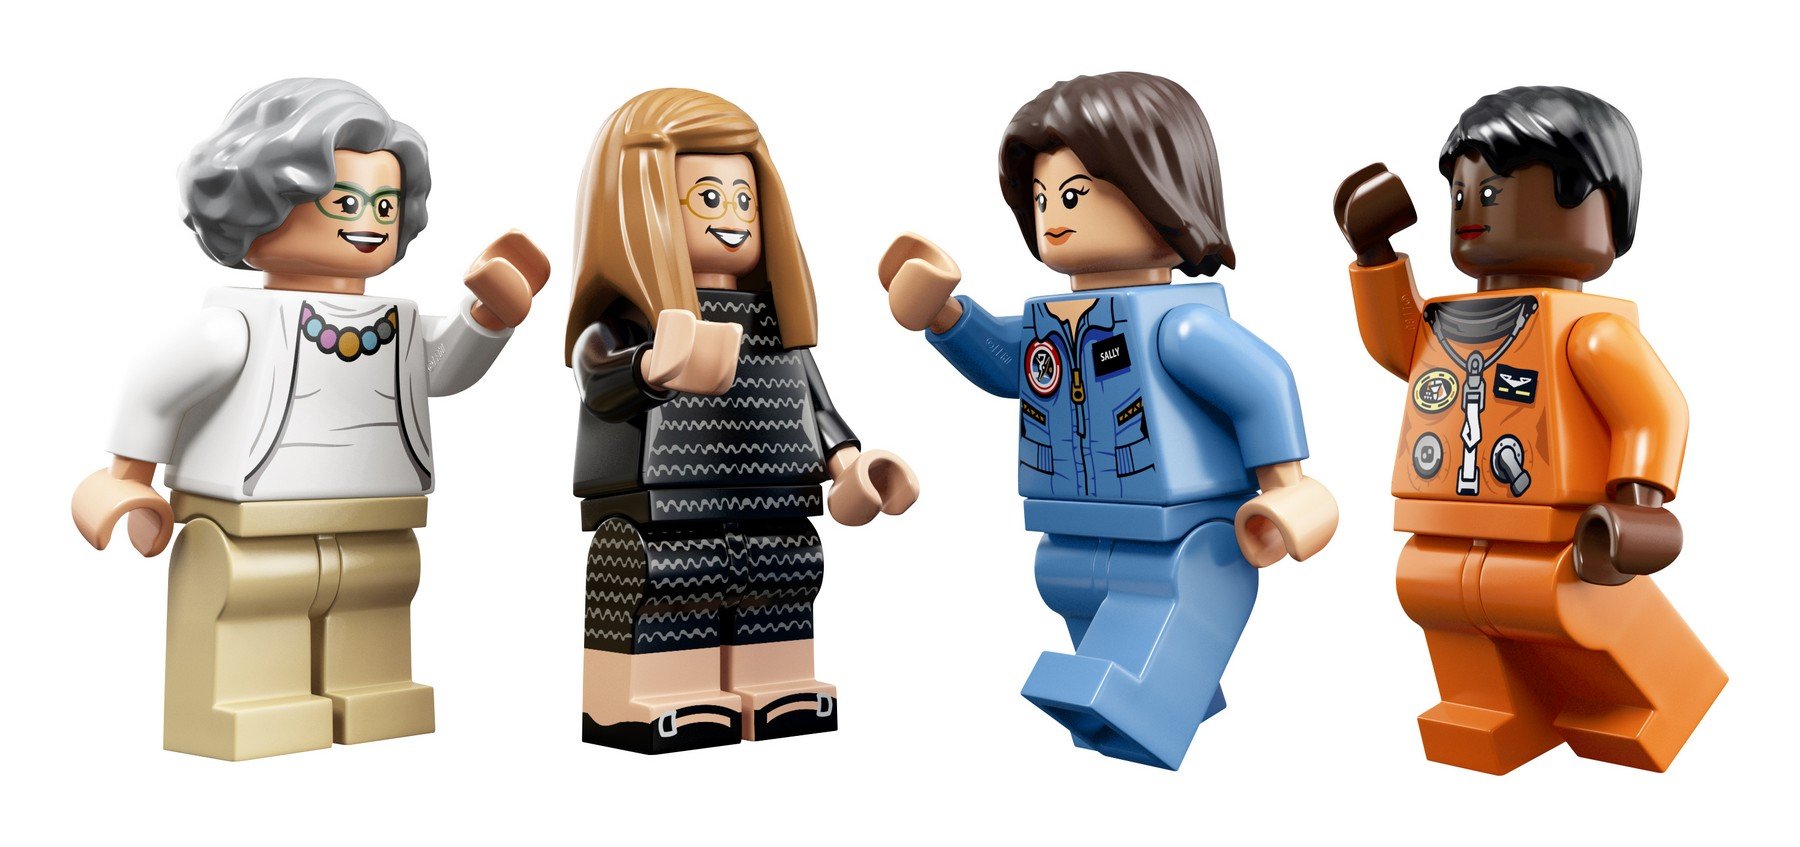 LEGO Ideas 21312 Women of NASA (231 Pieces)